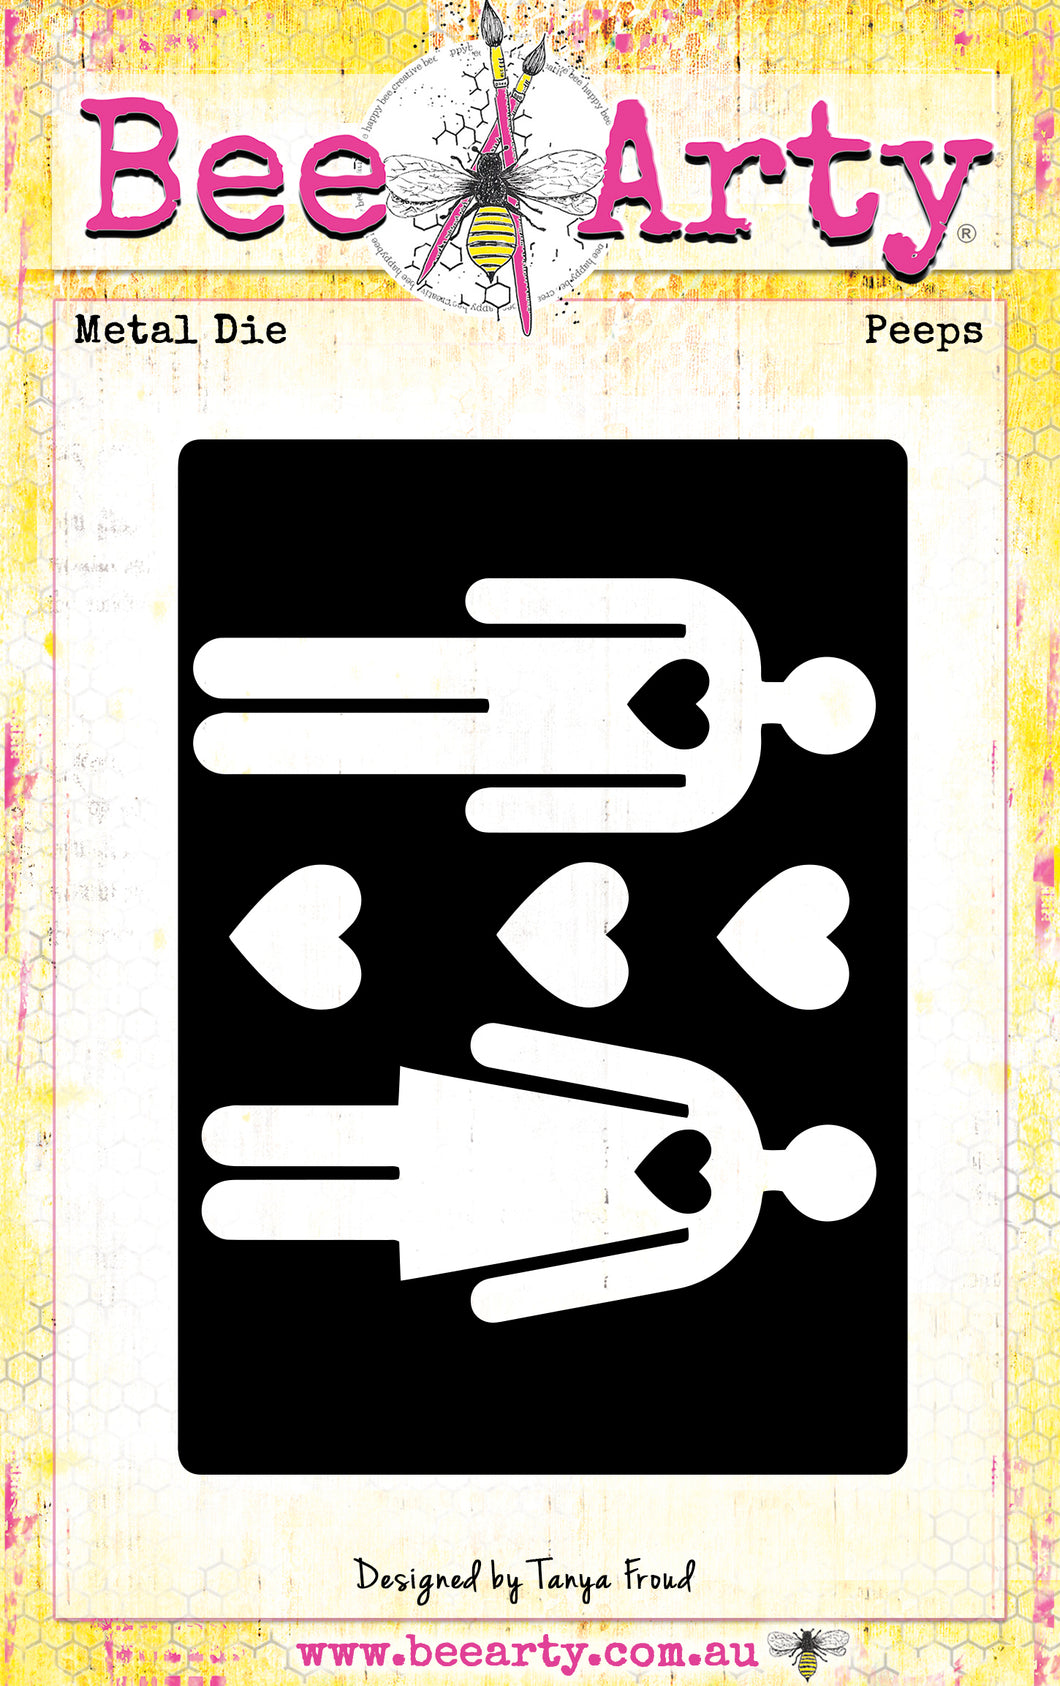 Peeps - Metal Die